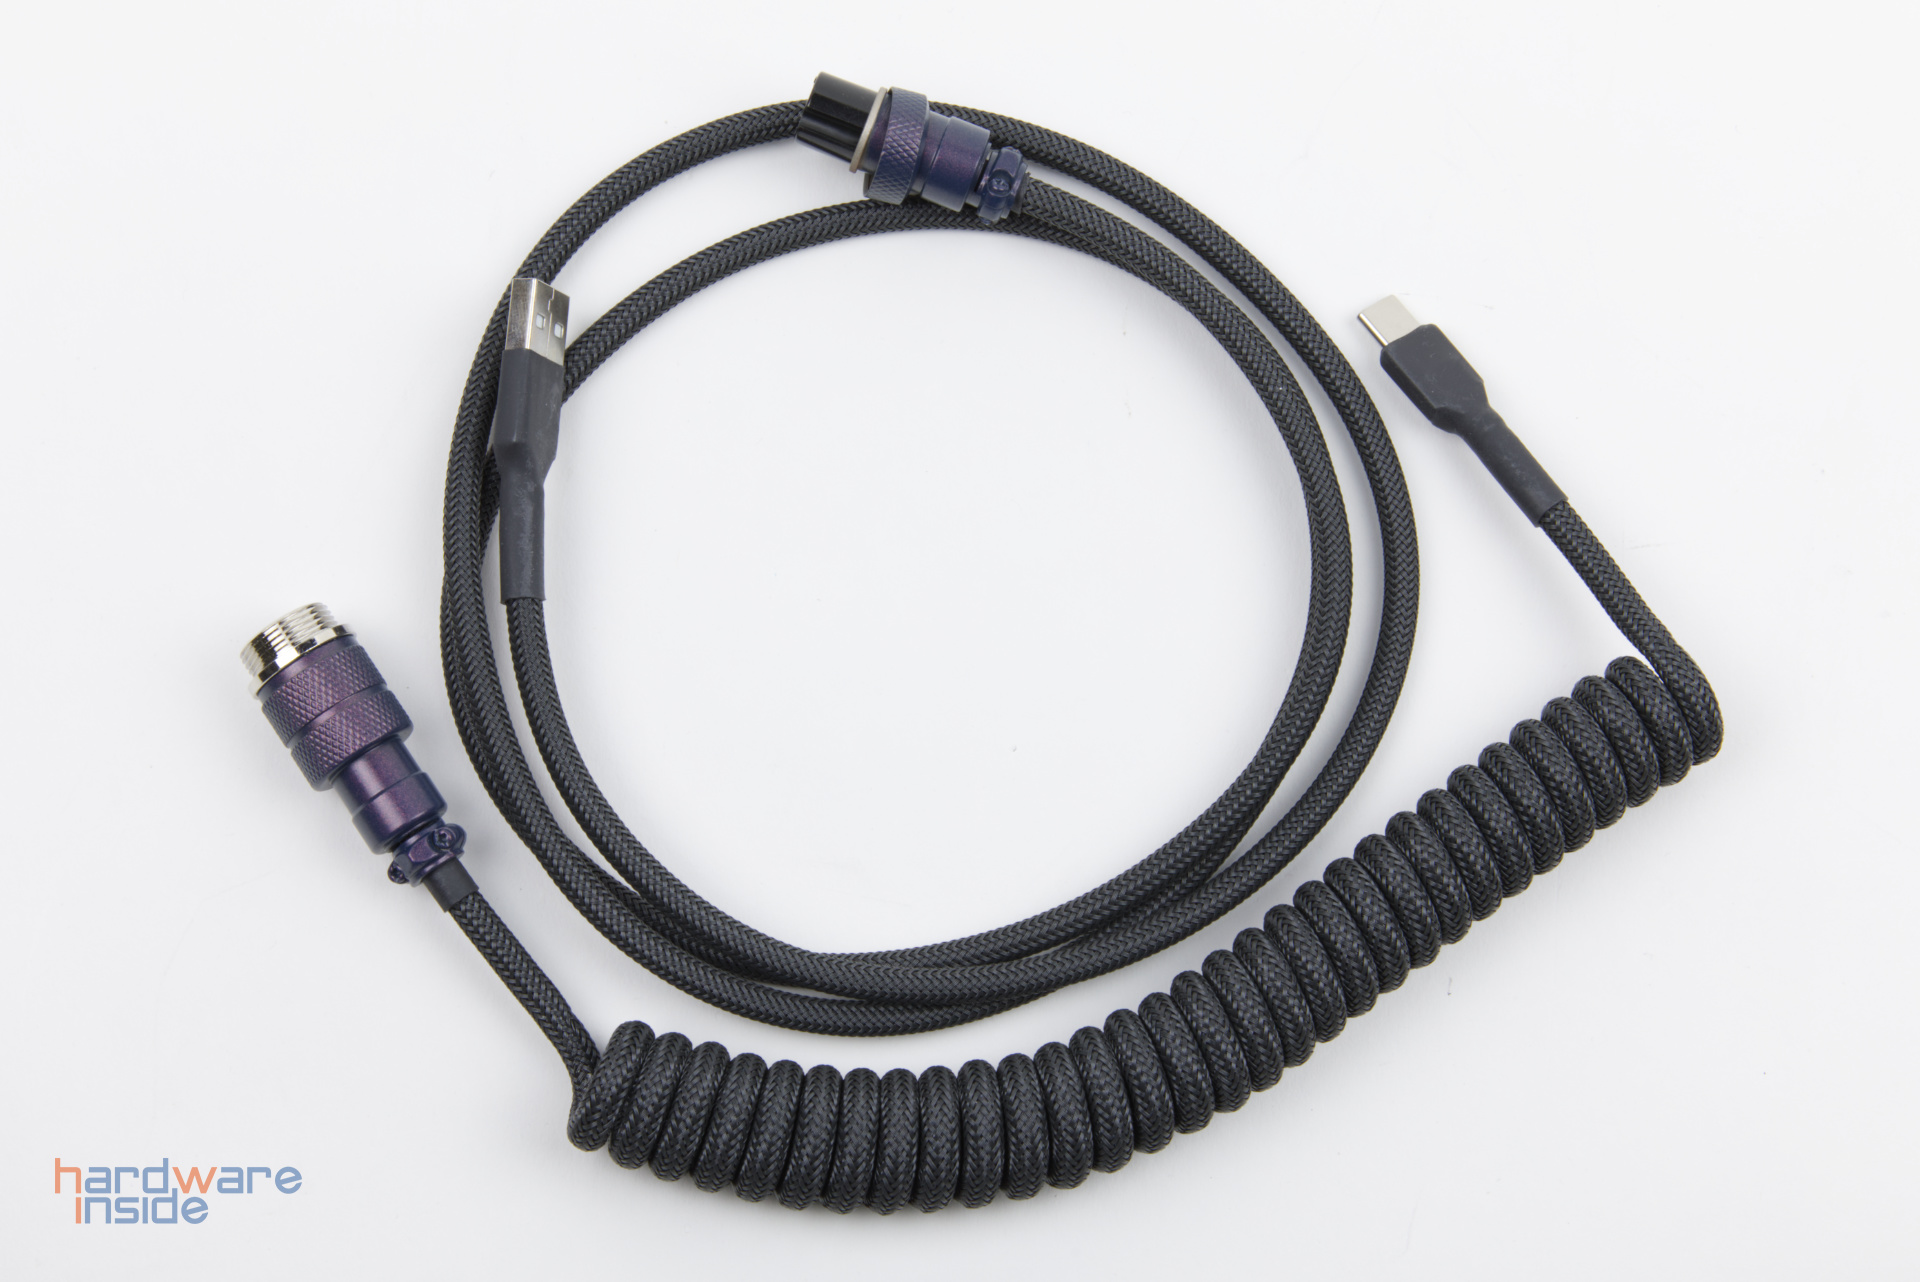 Keebstuff-Kabelmanufaktur-Mechanical-Keyboard-Cables-handcrafted-2.jpg